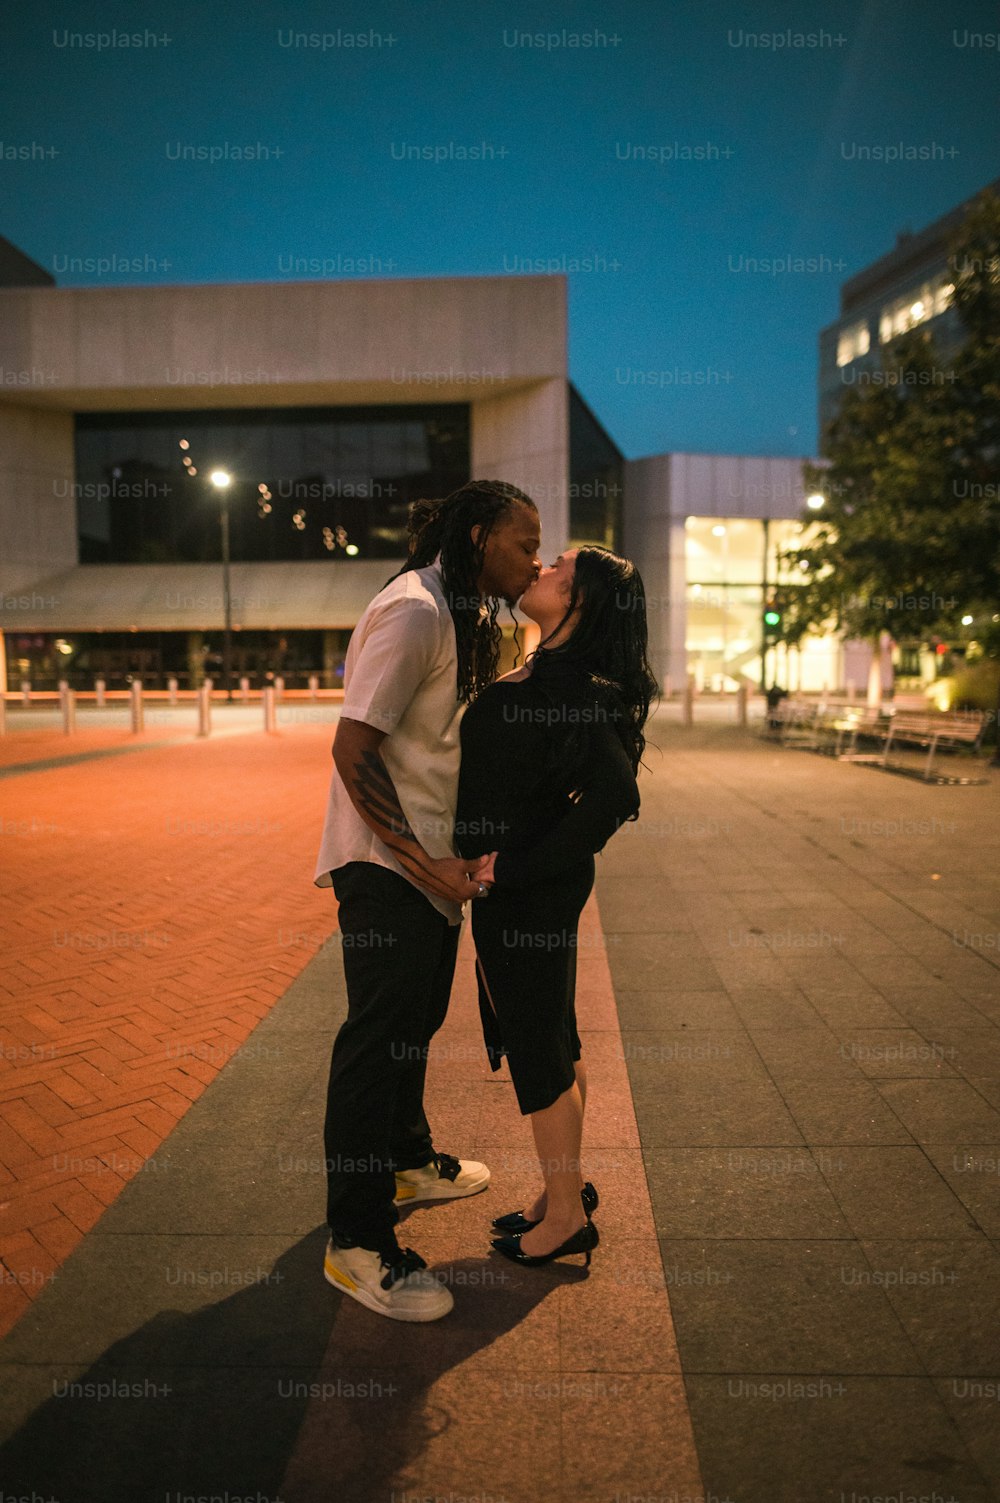 Un homme et une femme s’embrassent sur une planche à roulettes